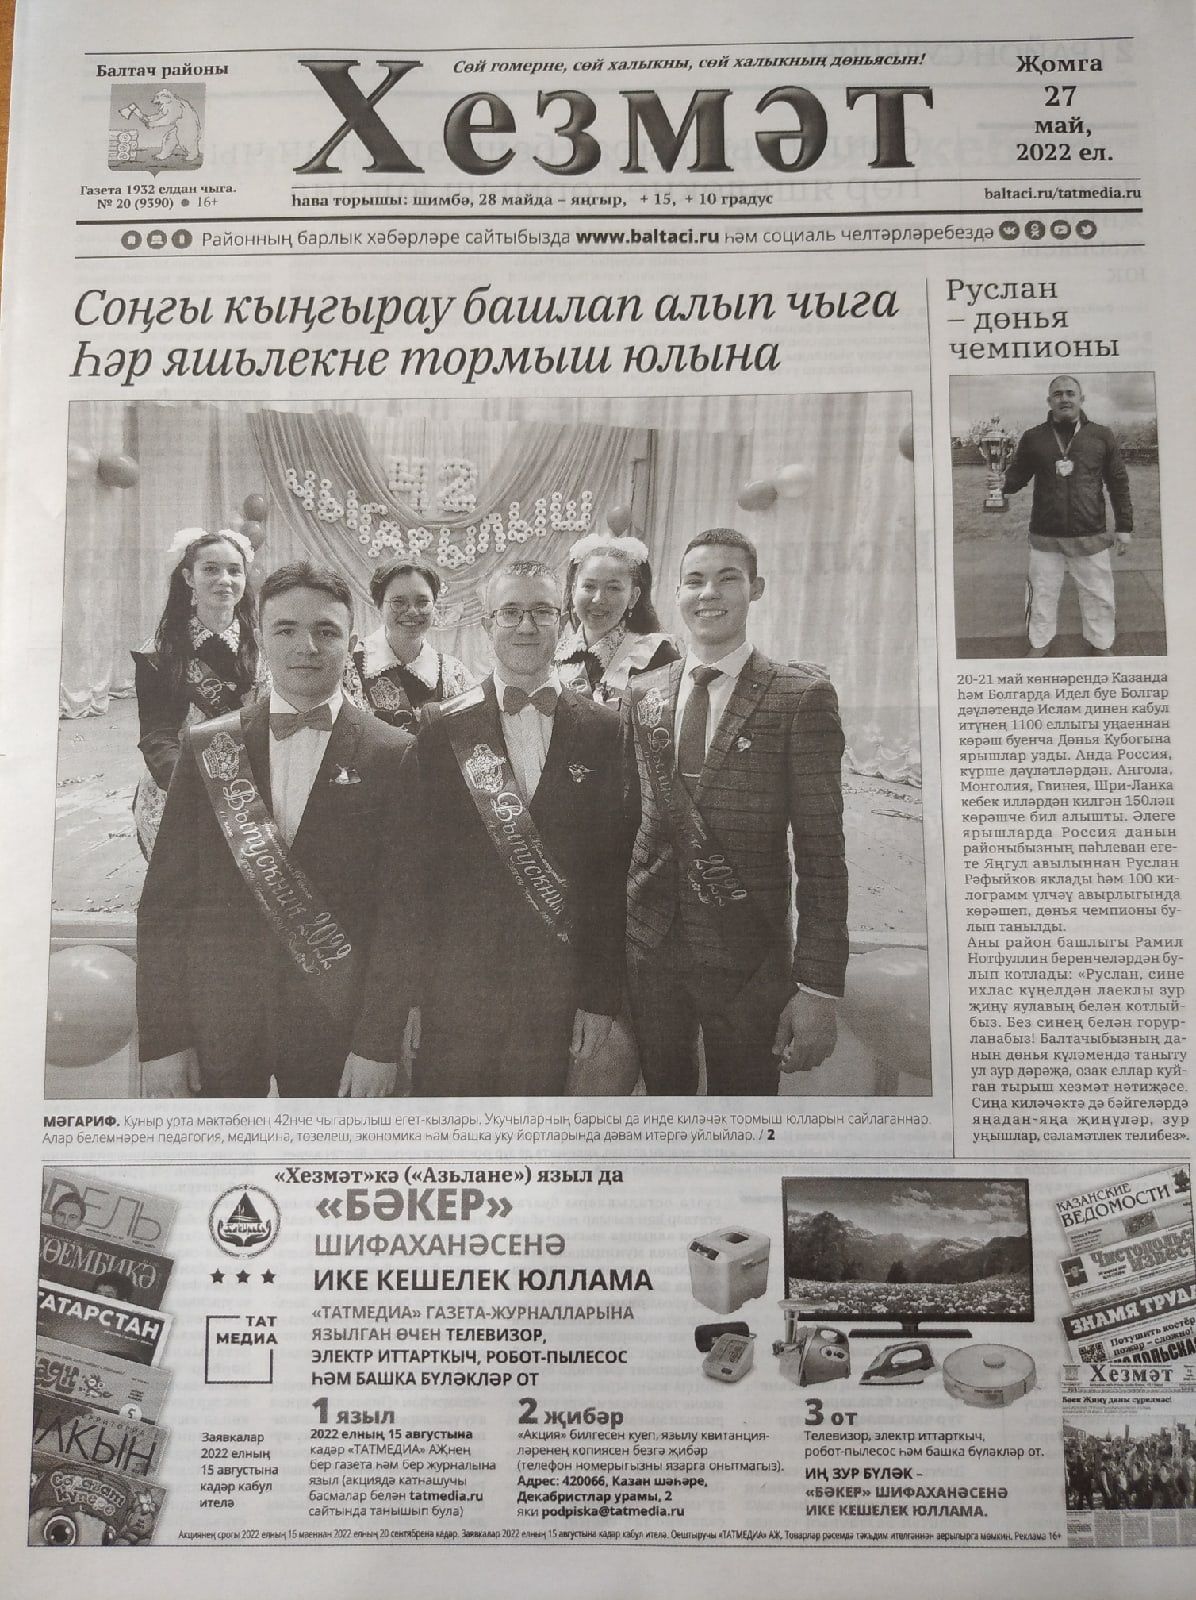 Газетаның 20нче санында (27 май, 2022 ел) чыгарылган белдерүләр һәм рекламалар